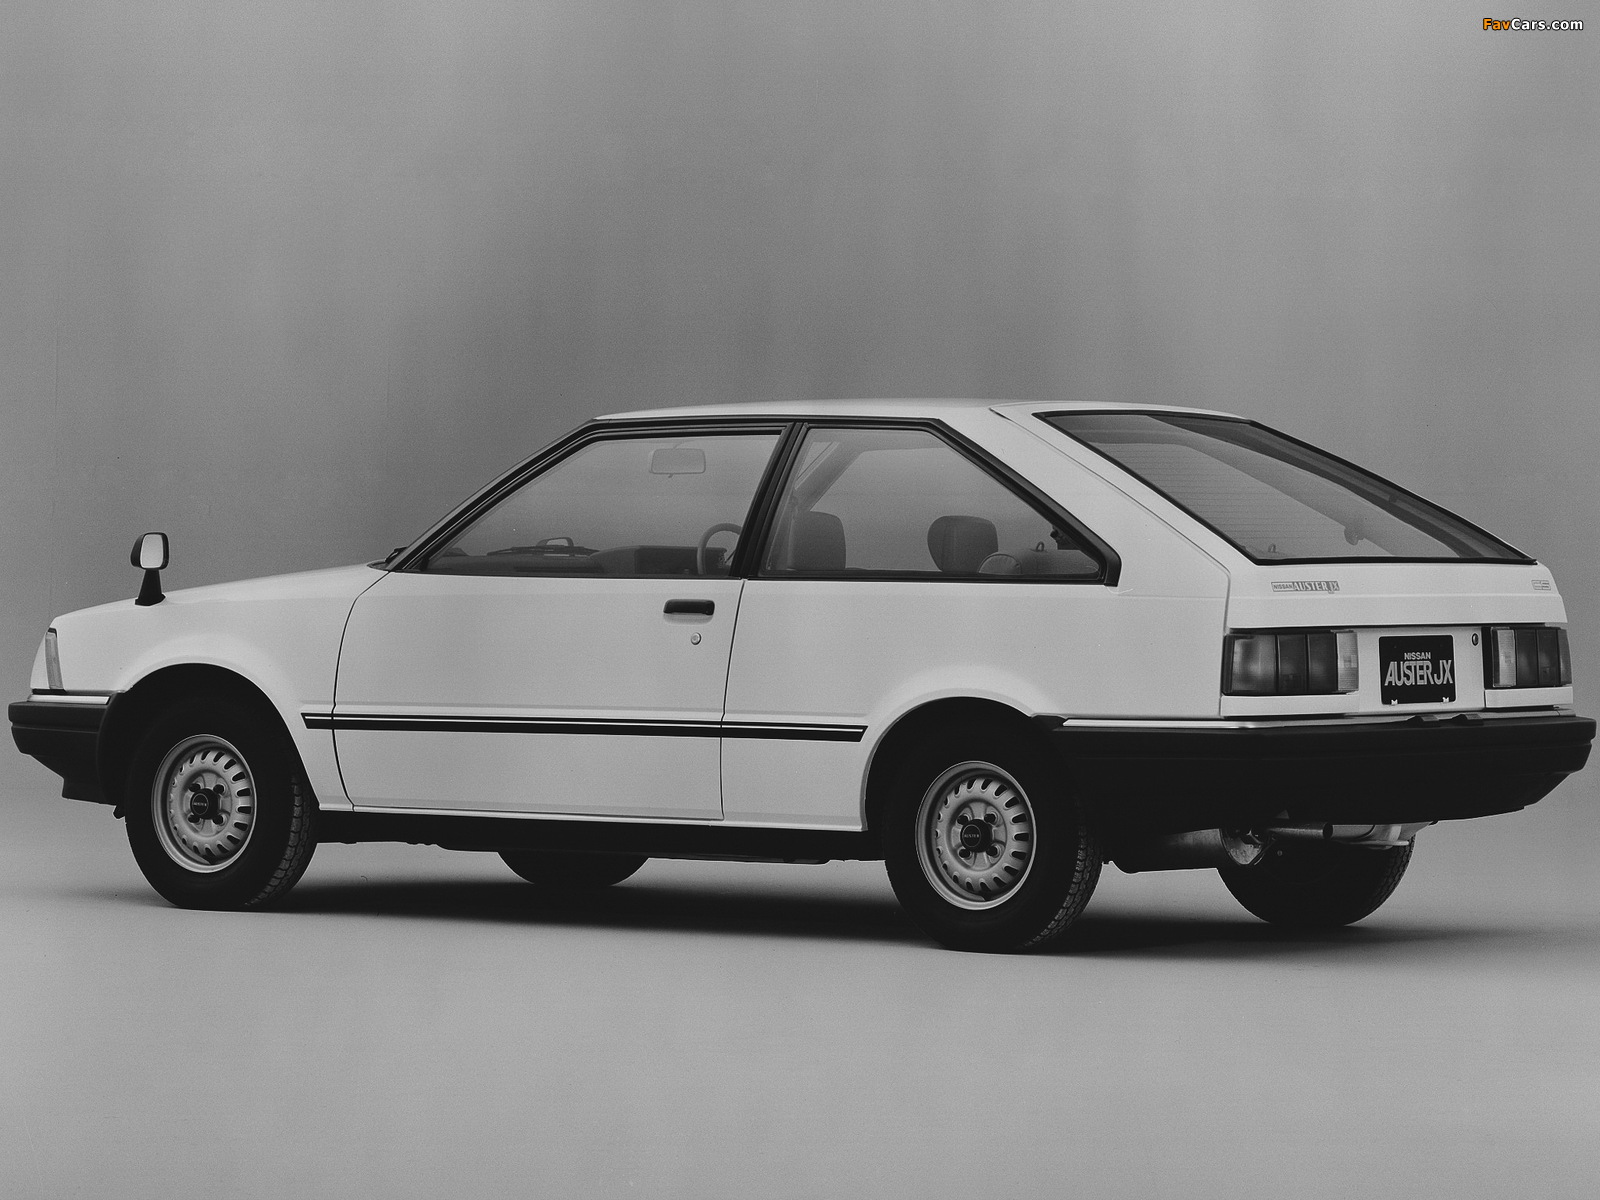 Nissan Auster JX Hatchback 1600 CS-X (T11) 1981–83 pictures (1600 x 1200)